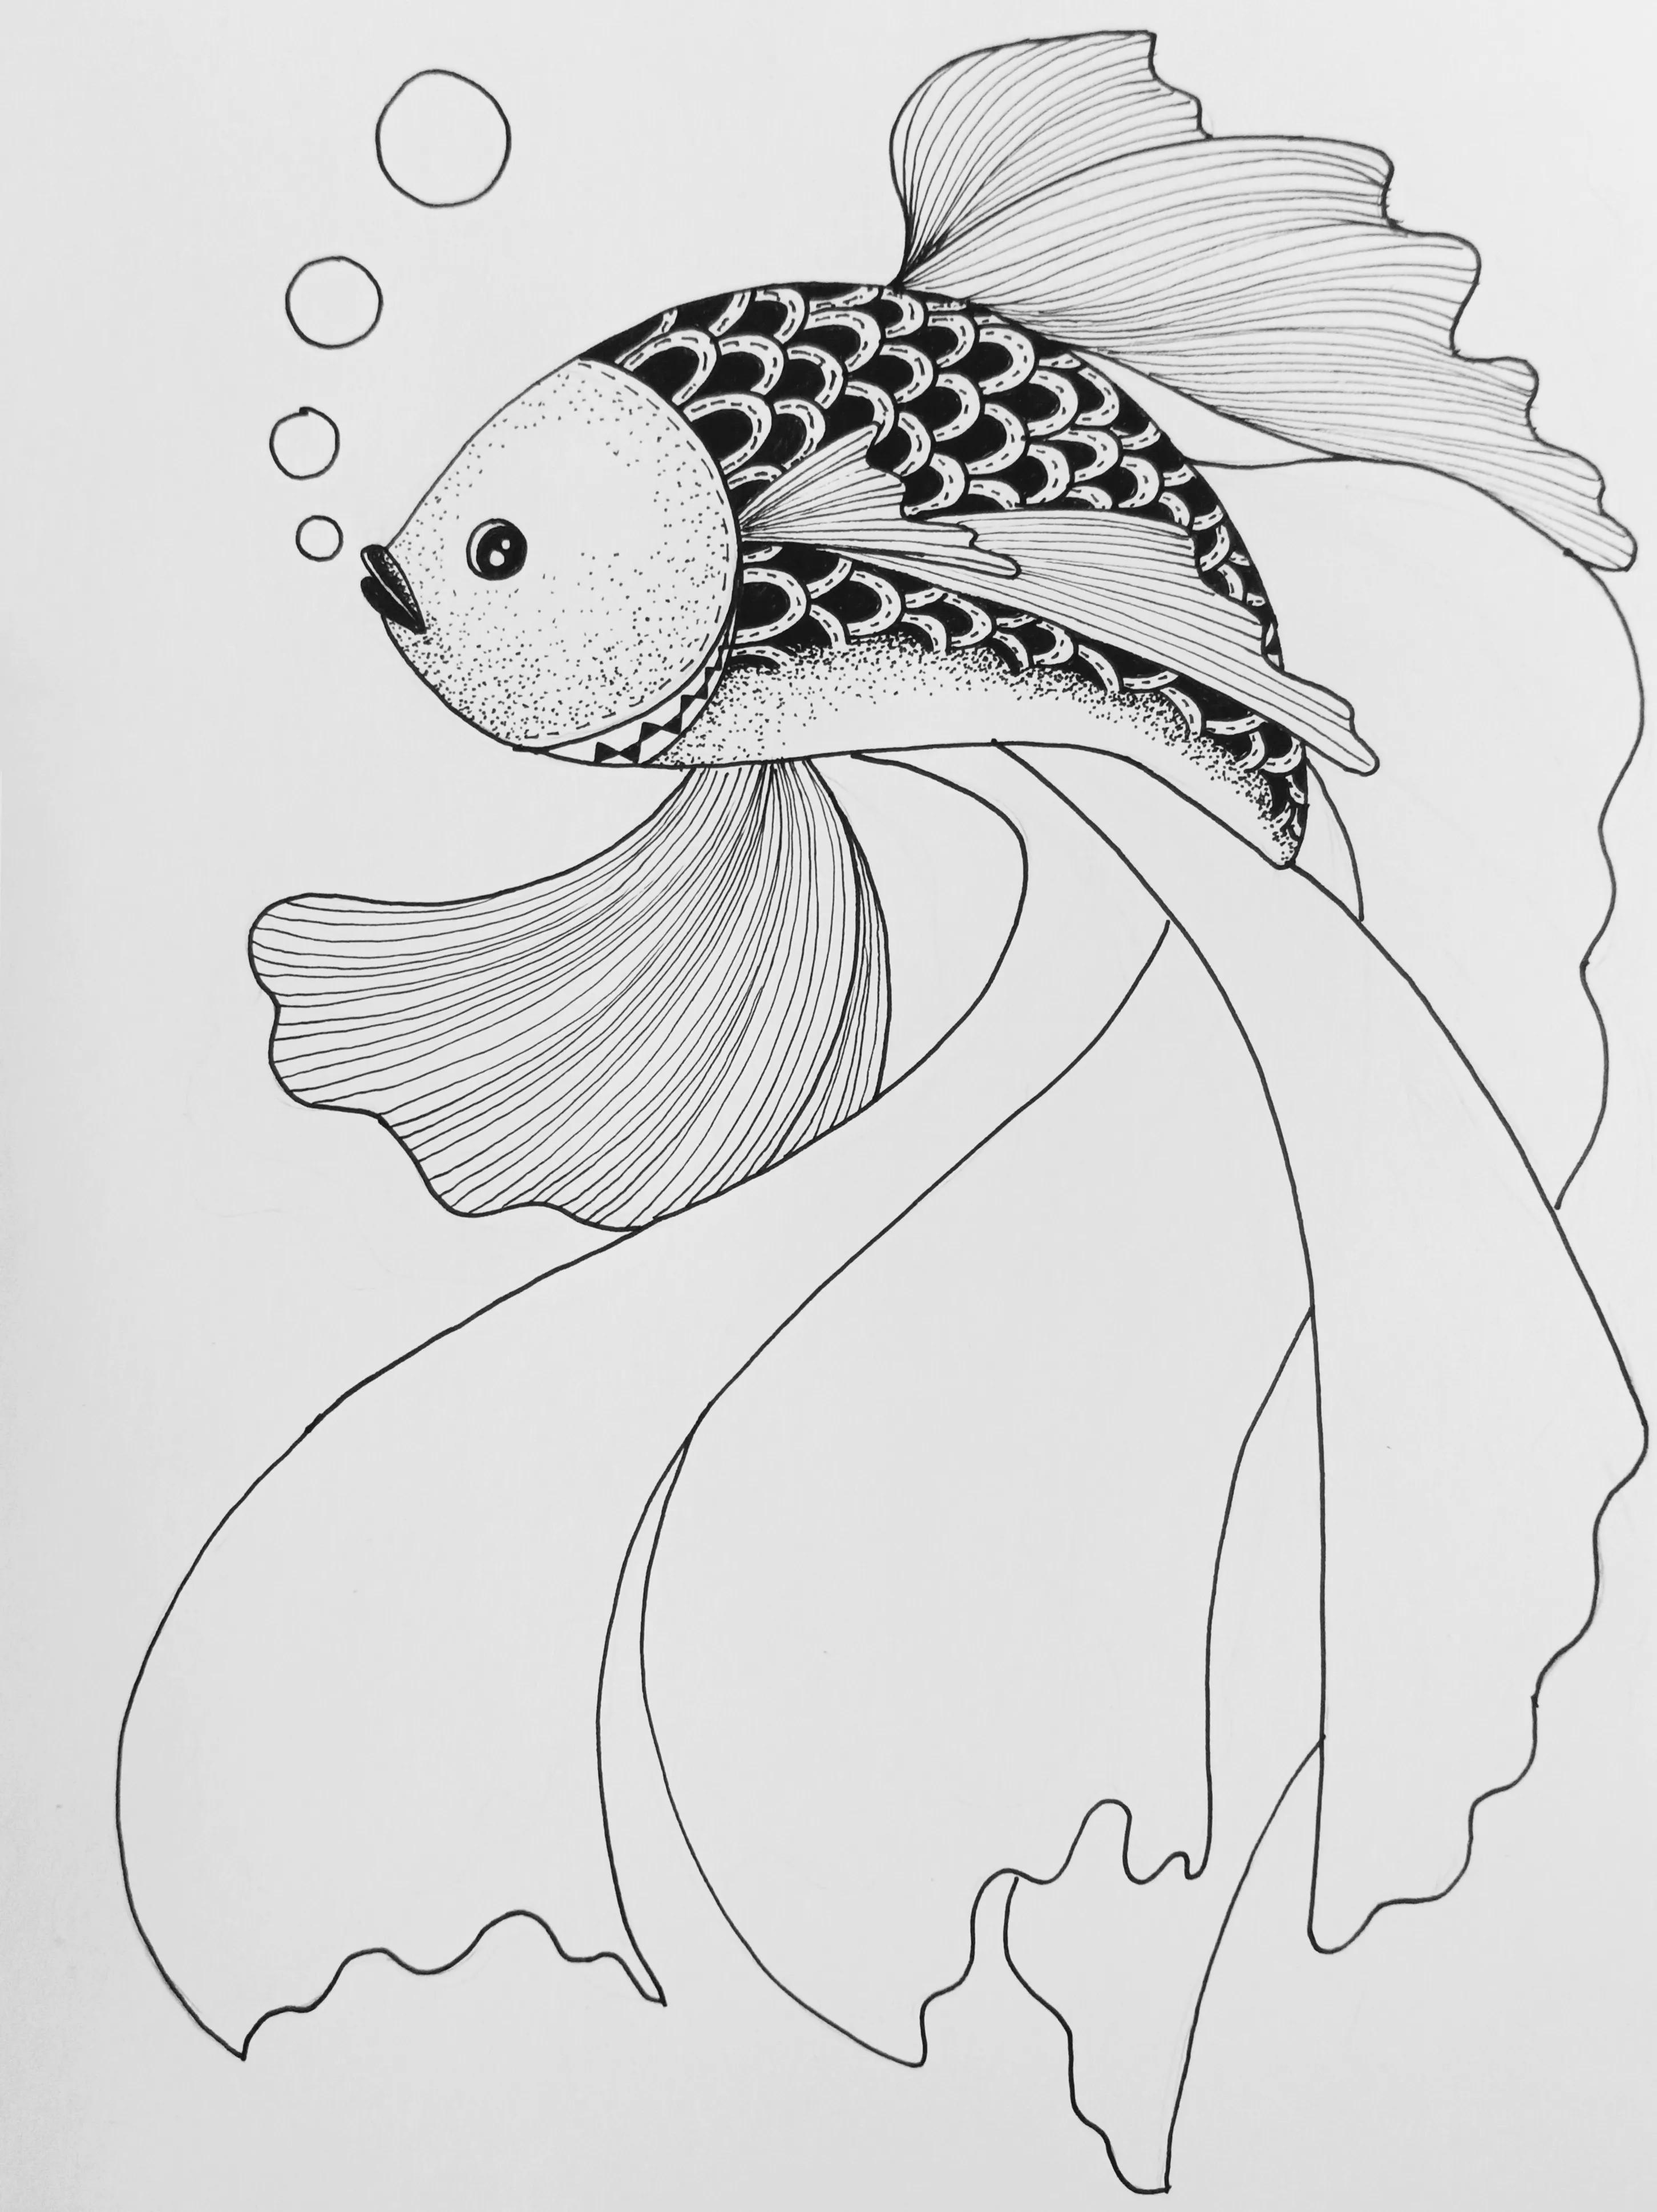 我画的第六条鱼,祝高考生考试顺利